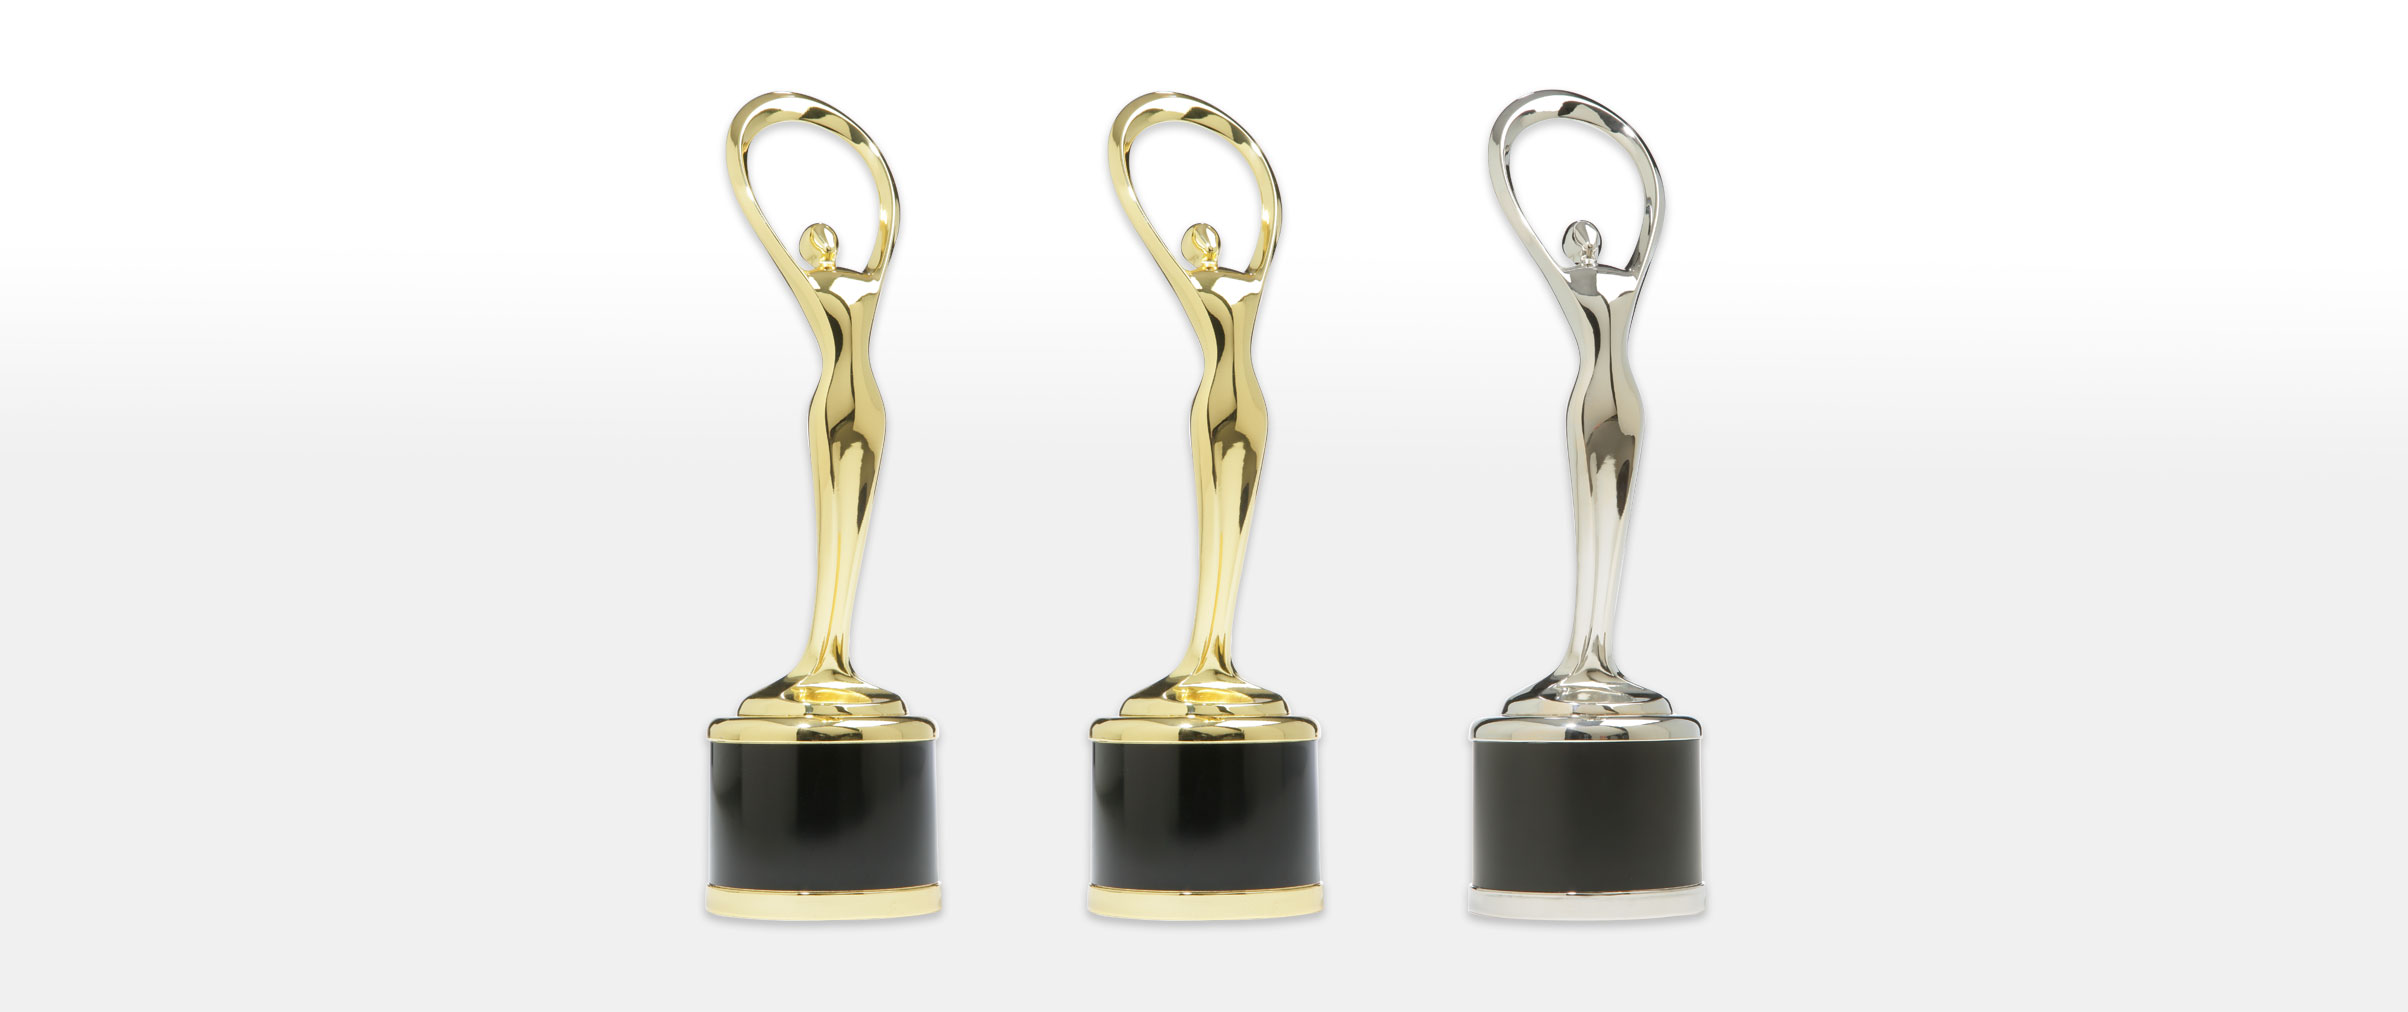 3 Communicator awards